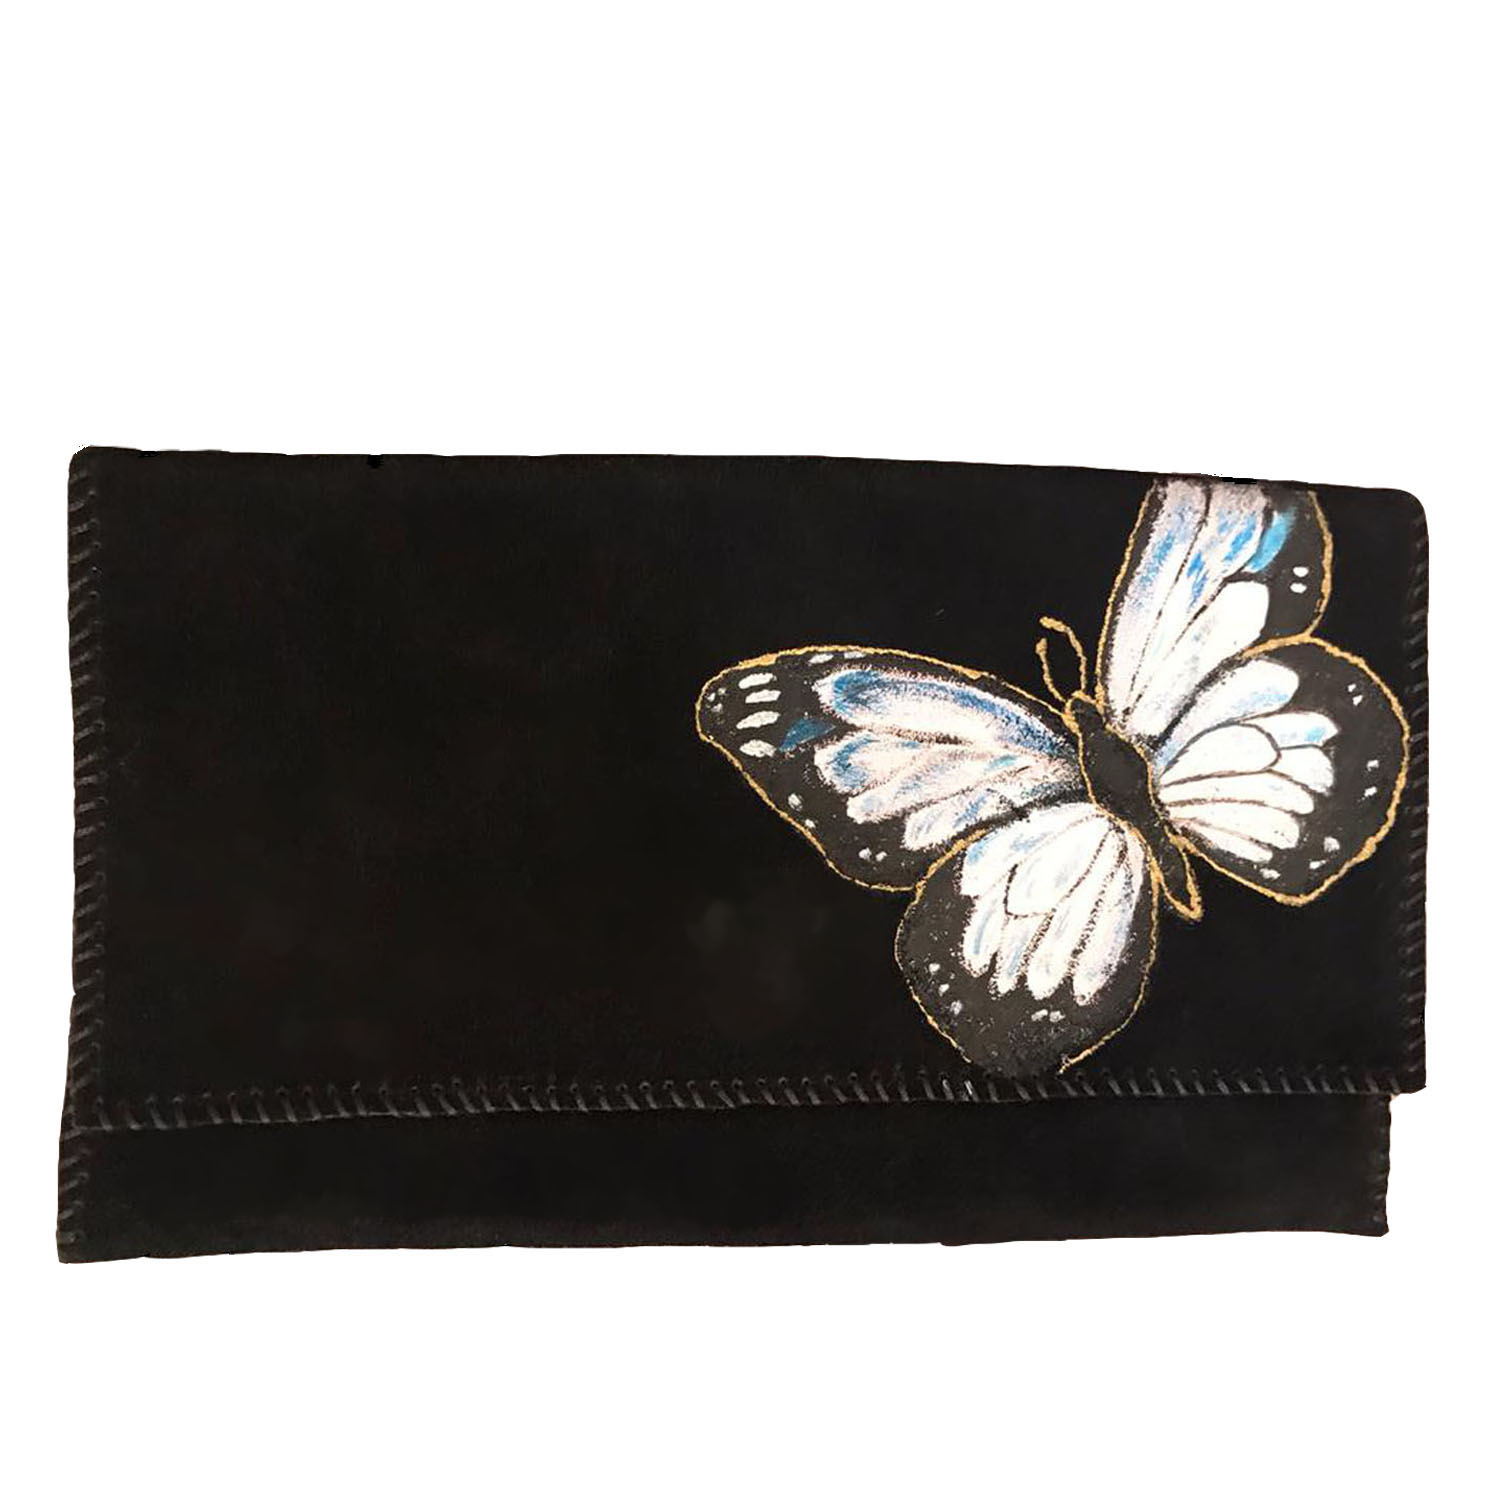 کیف دستی چرمی مدل پروانه کد 003